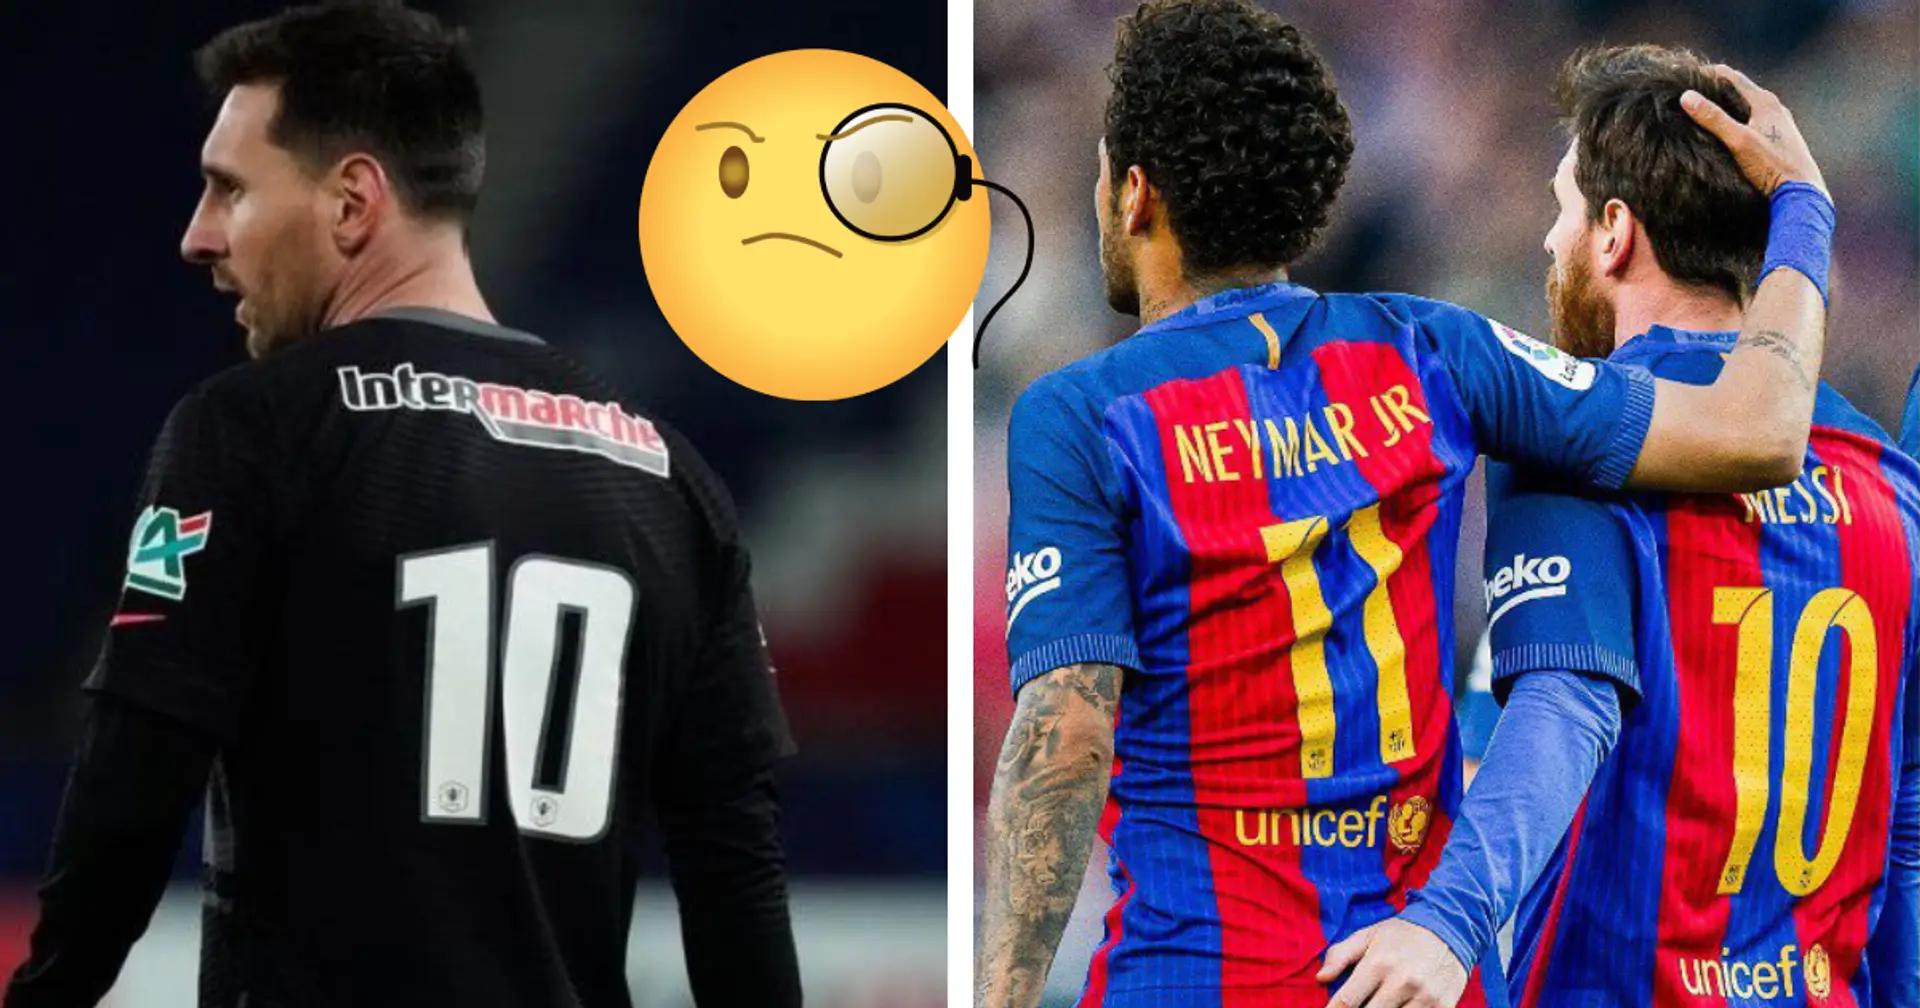 Warum trug Leo Messi das Trikot mit der Nummer 10 im gestrigen Spiel vs. Marseille? - ERKLÄRT